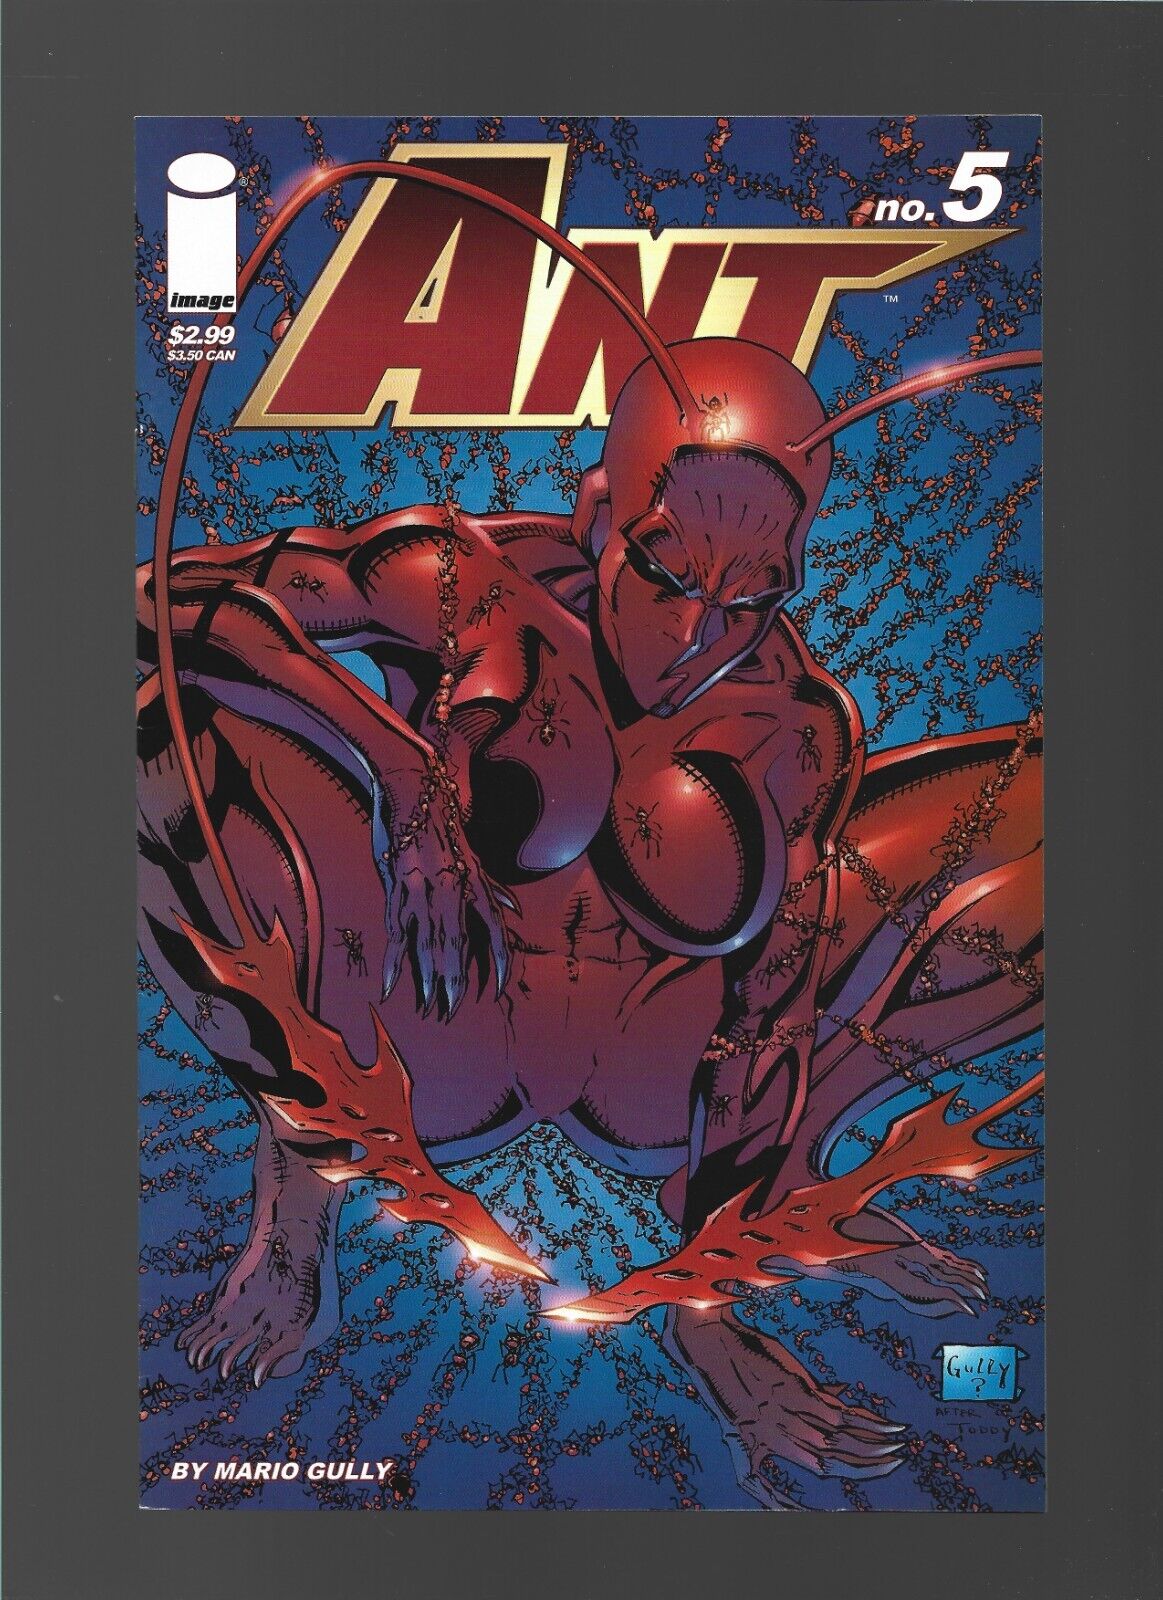 Ant #5